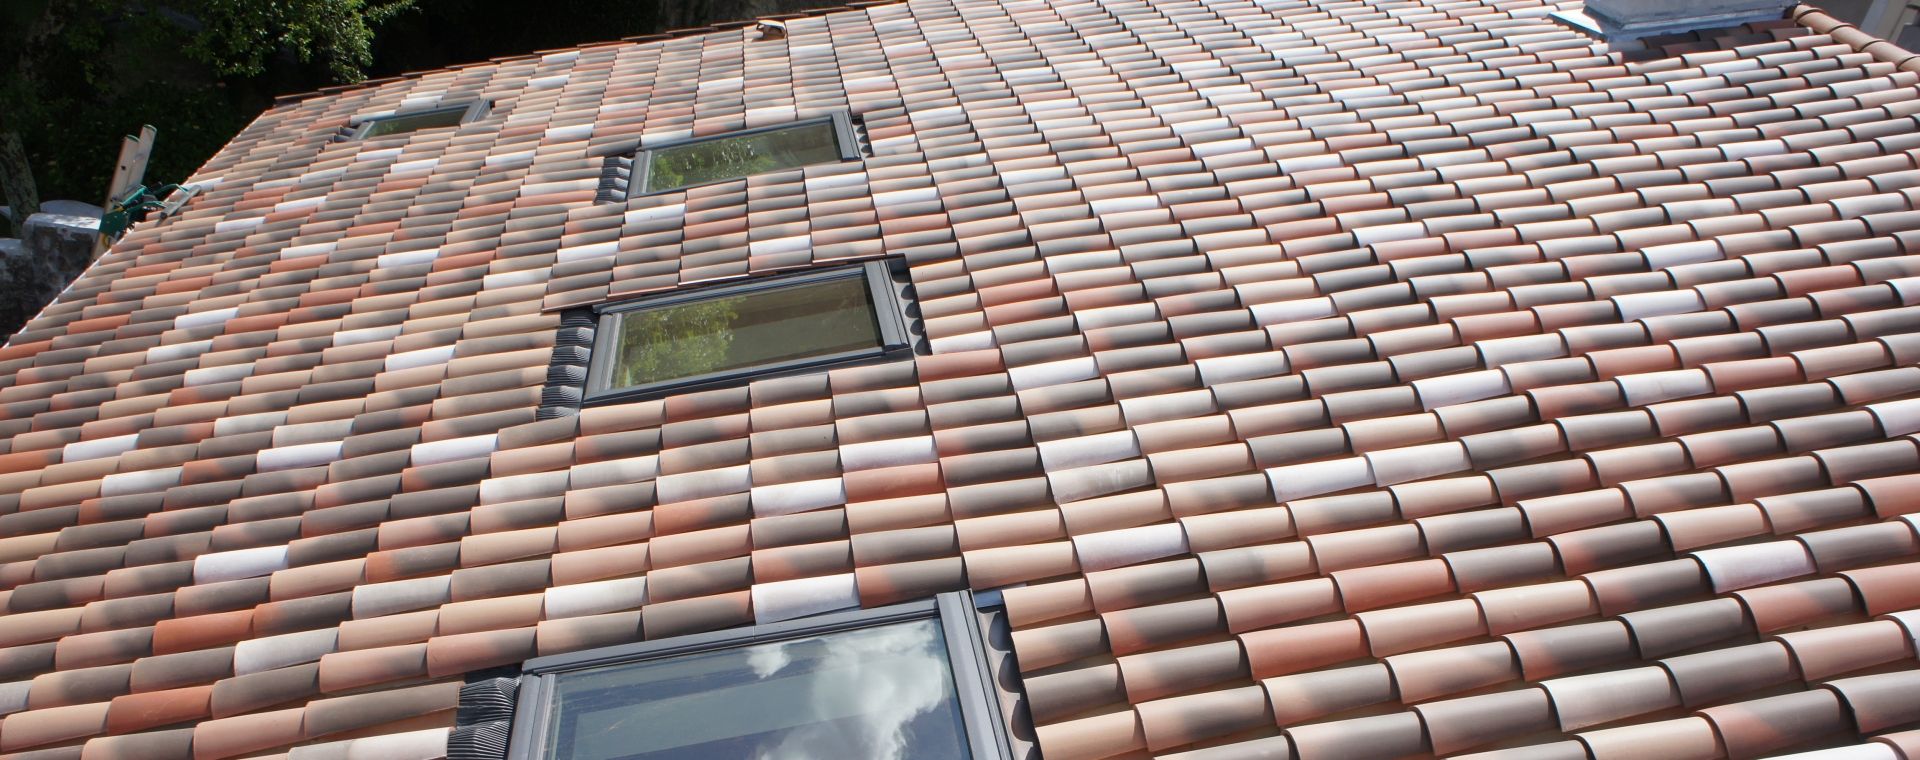 Fenêtre de toit VELUX couverture toiture rénovation énergétique Aubenas sud Ardèche